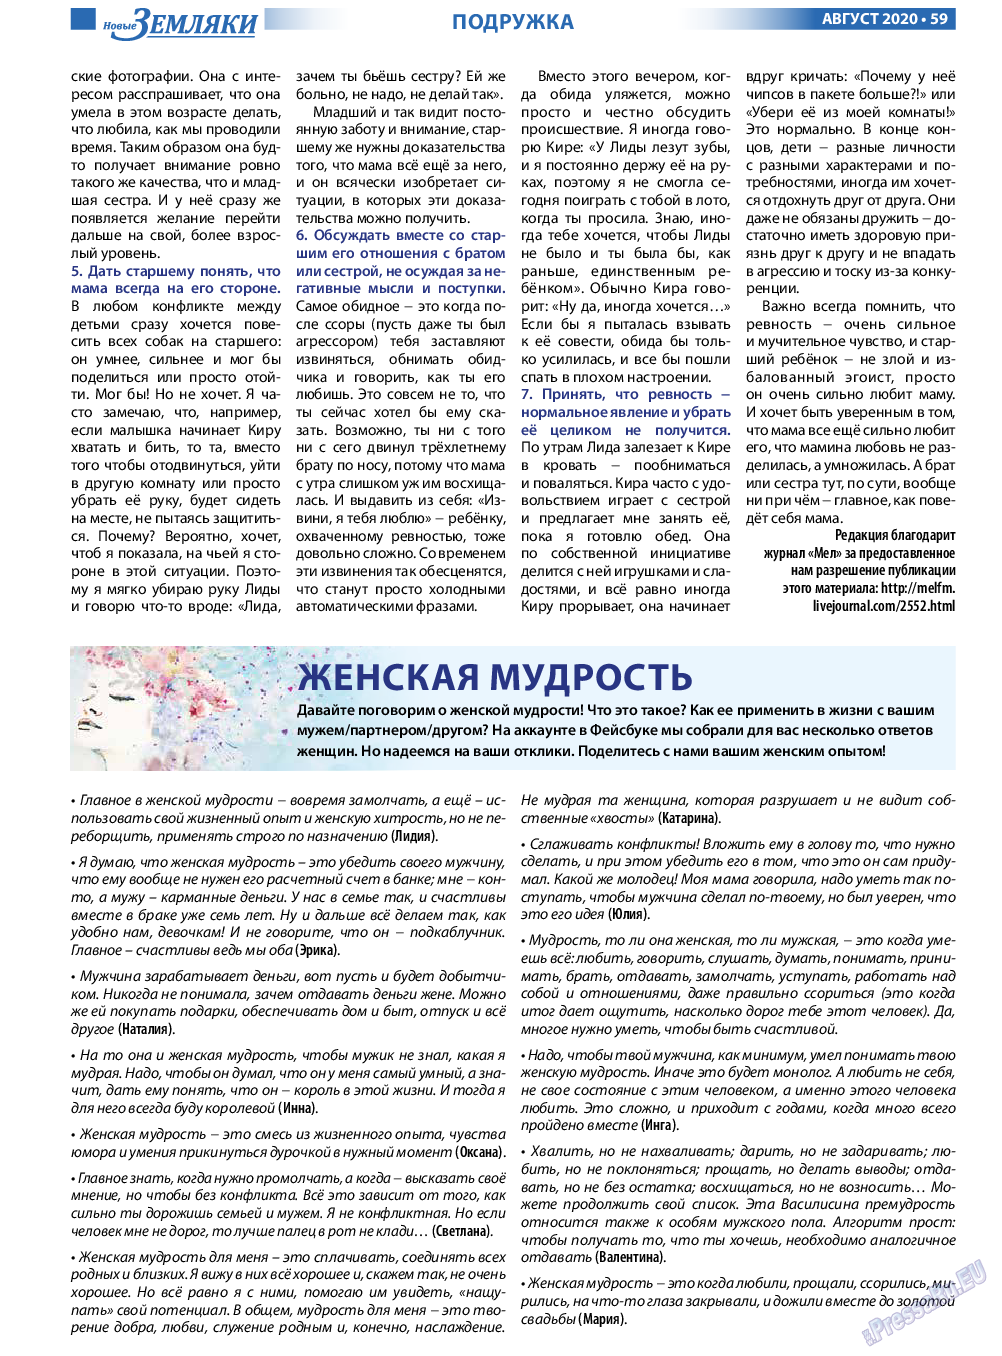 Новые Земляки, газета. 2020 №8 стр.59